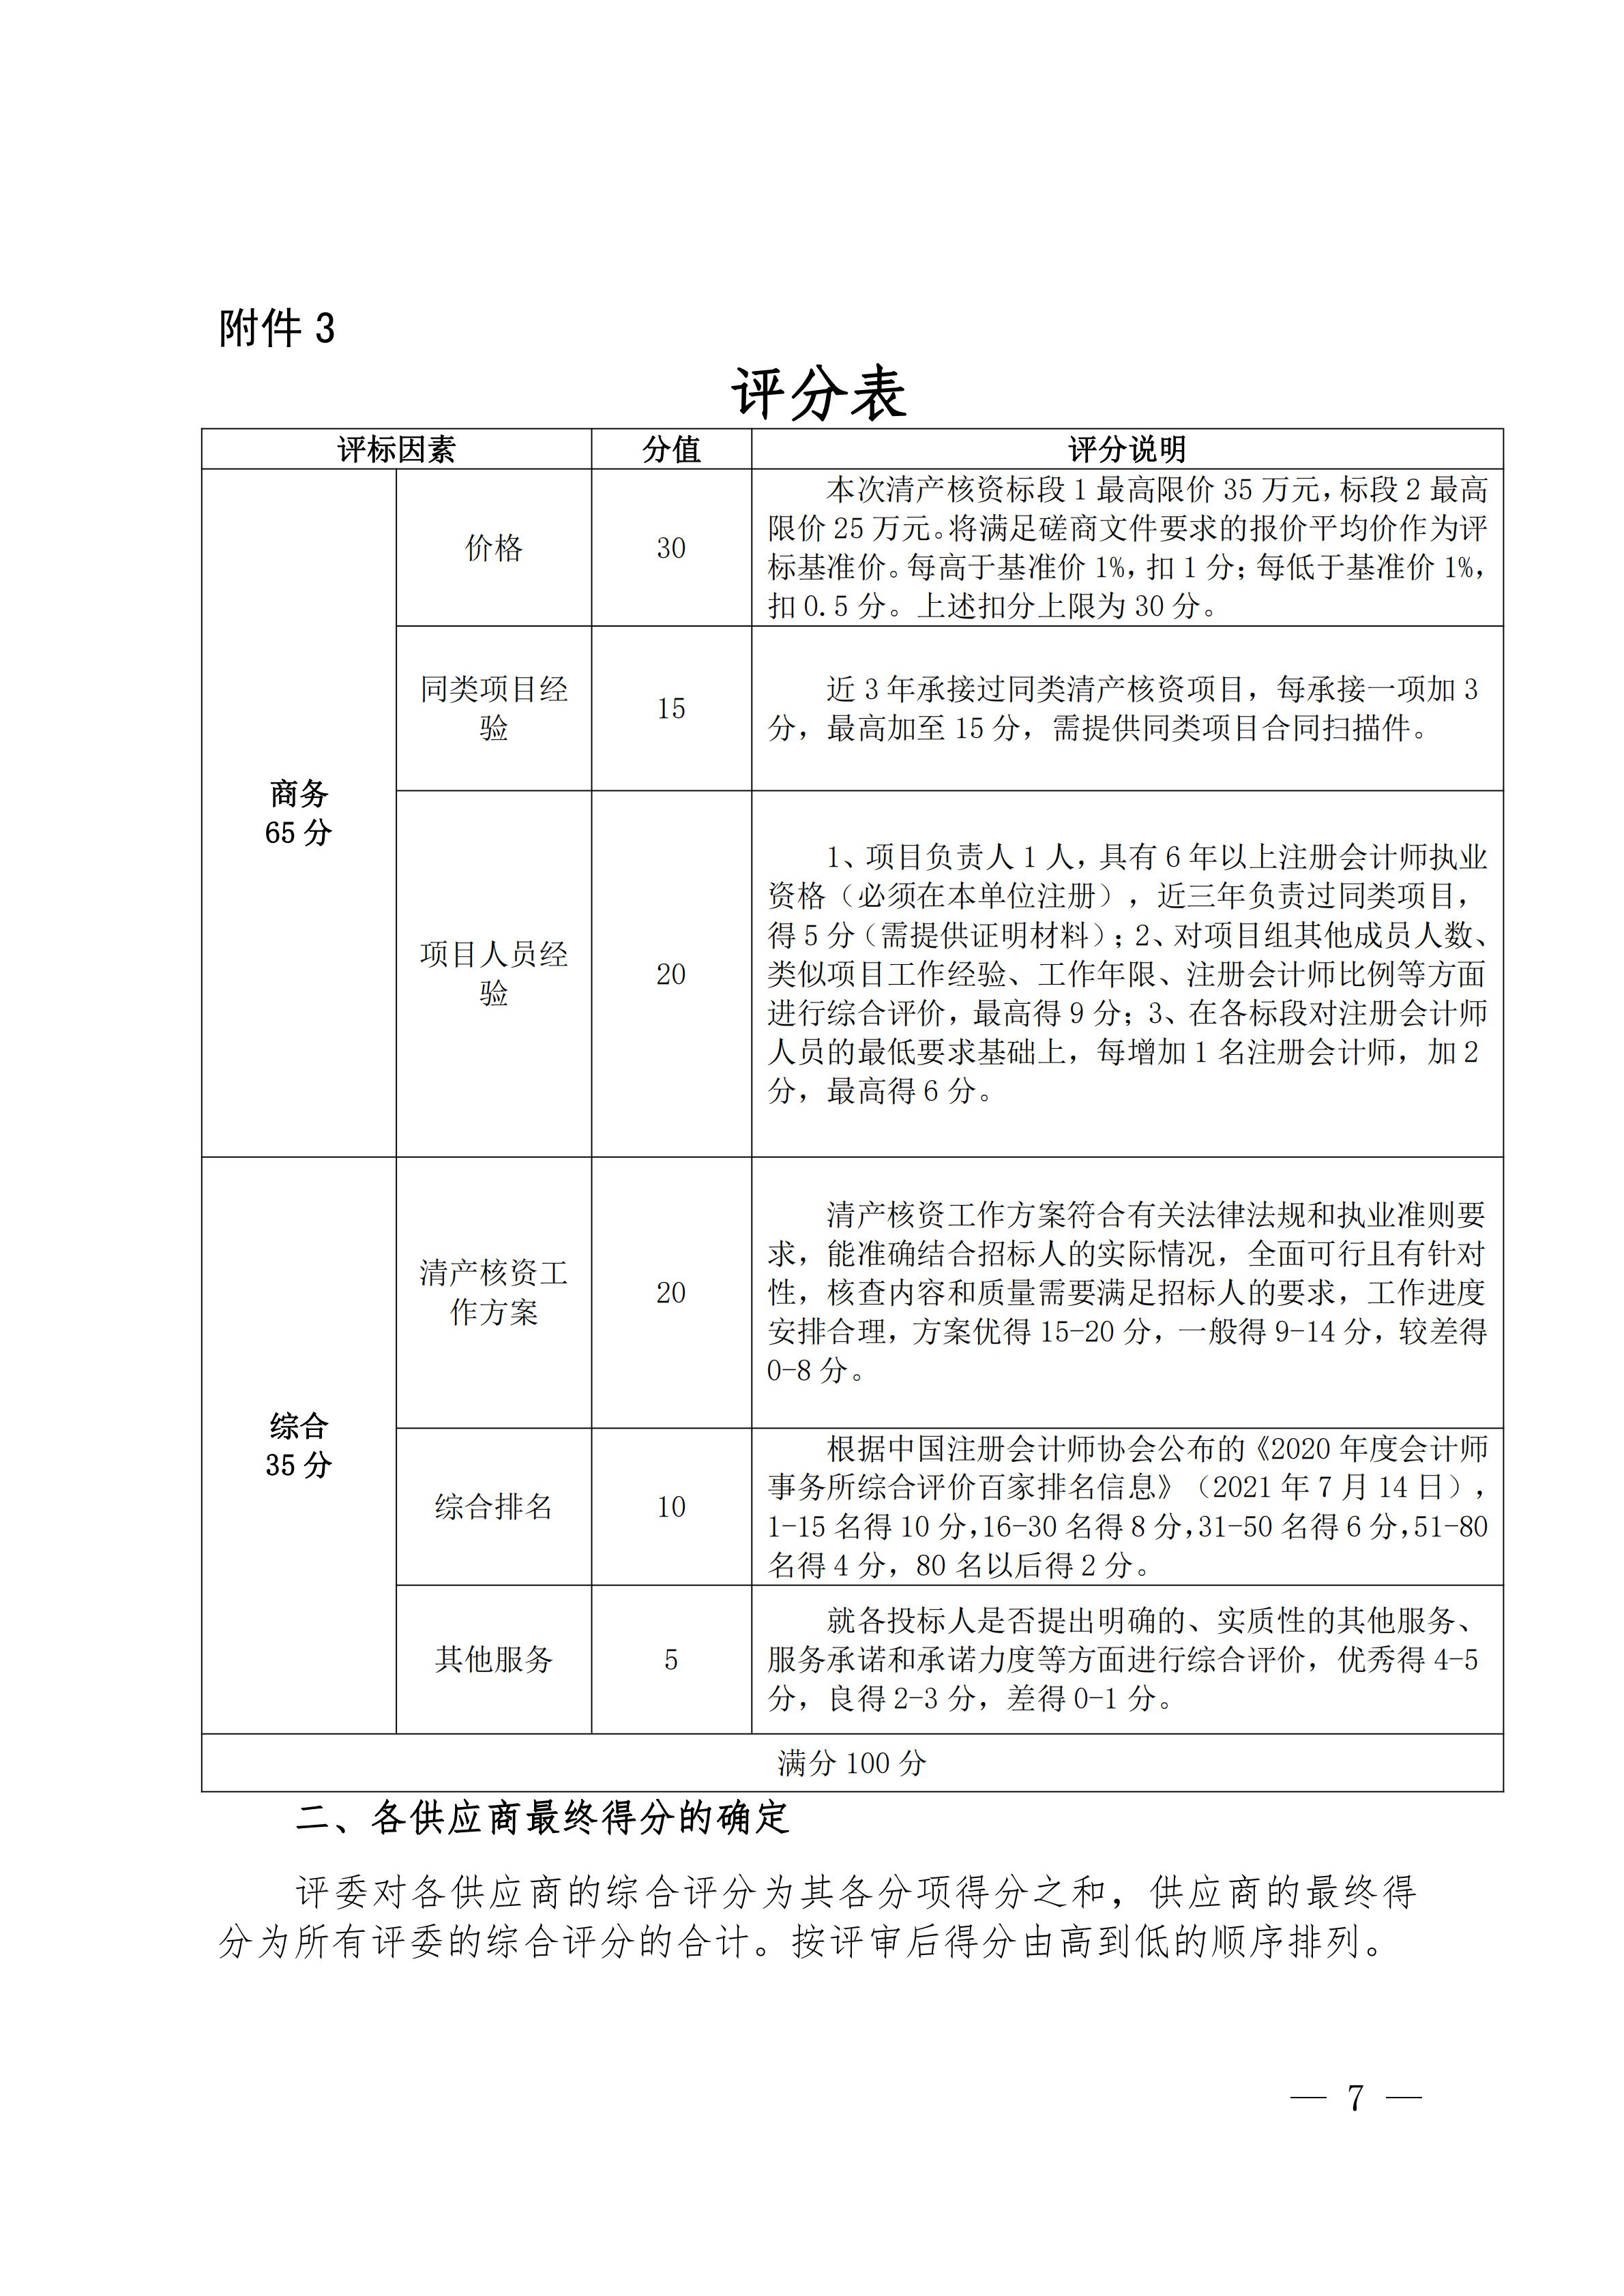 69、长江产业集团清产核资邀标文件(1)_06.jpg